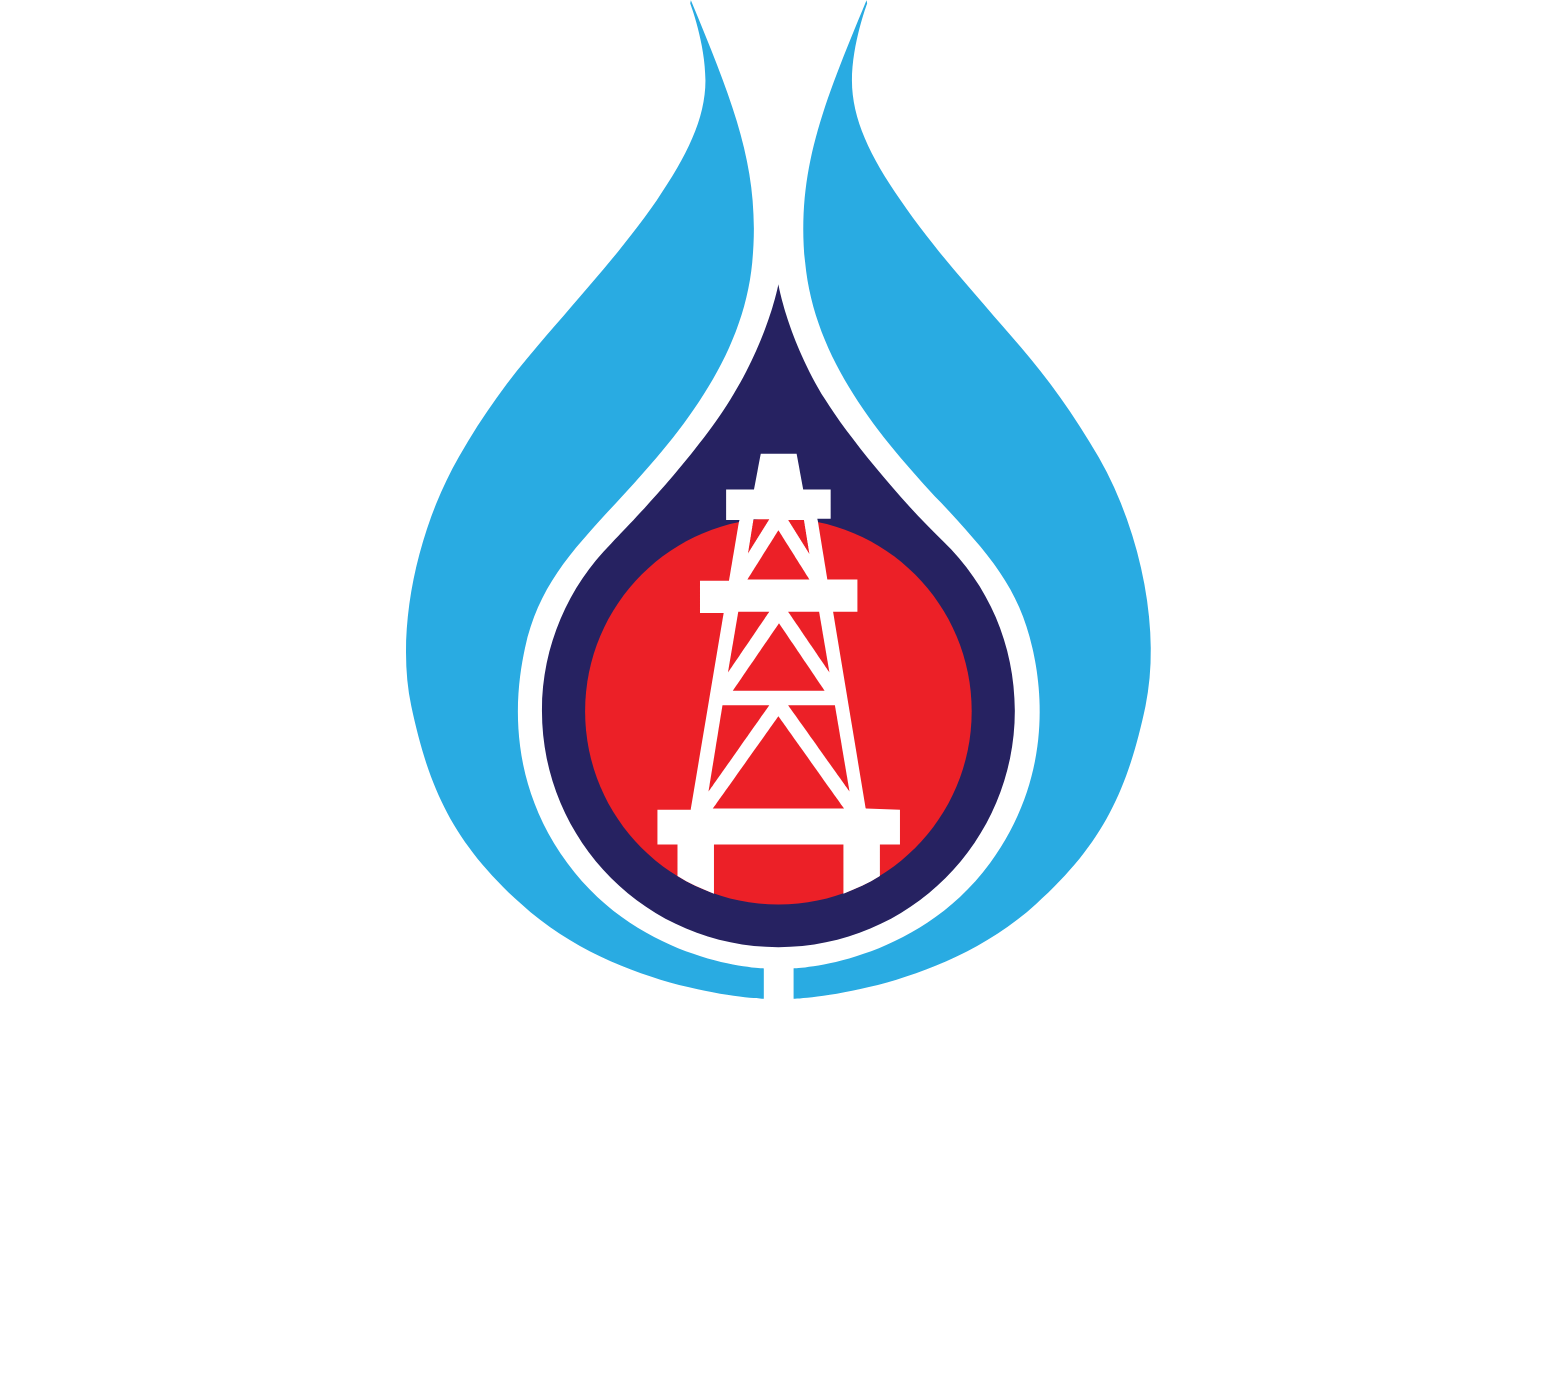 PTT Exploration and Production logo grand pour les fonds sombres (PNG transparent)